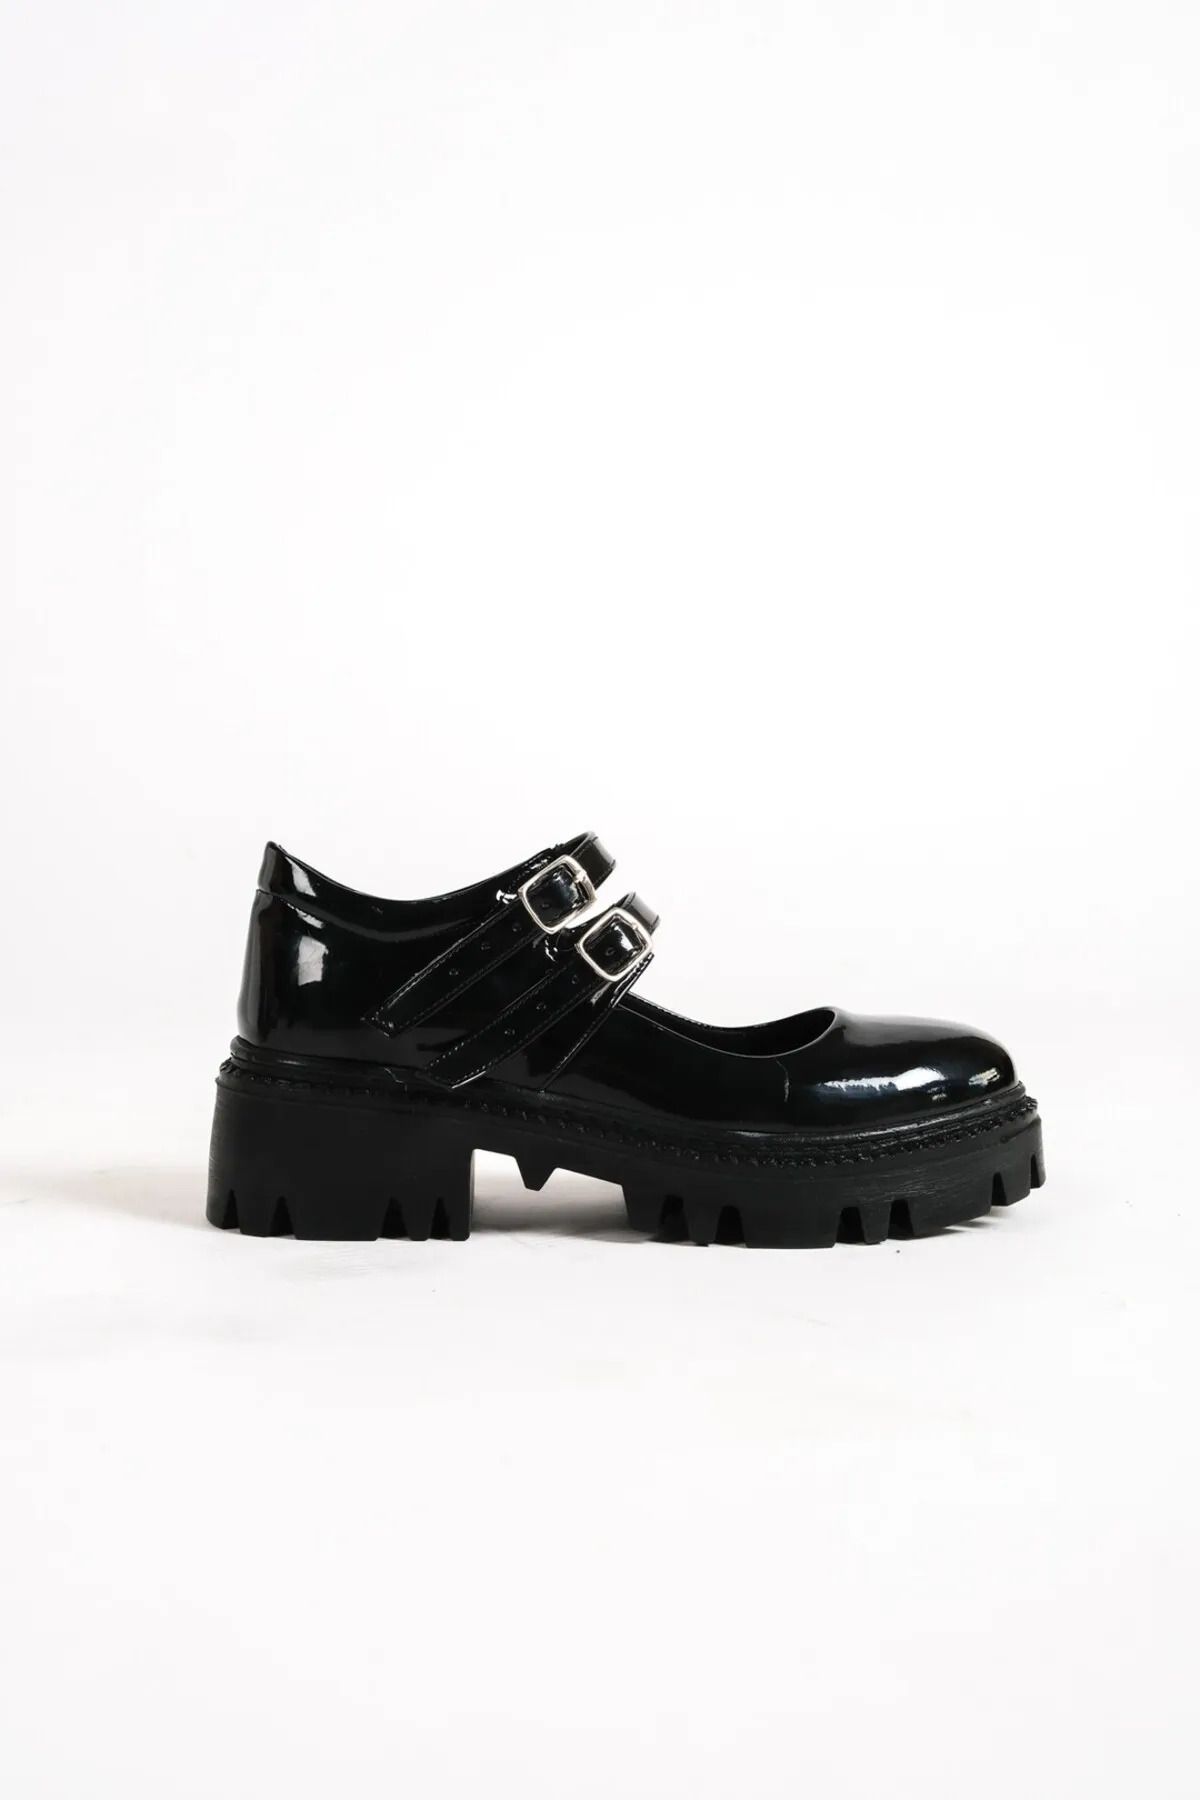 ayakkabıhavuzu Kadın Siyah Rugan Kalın Taban Çift Baretli Ayakkabı